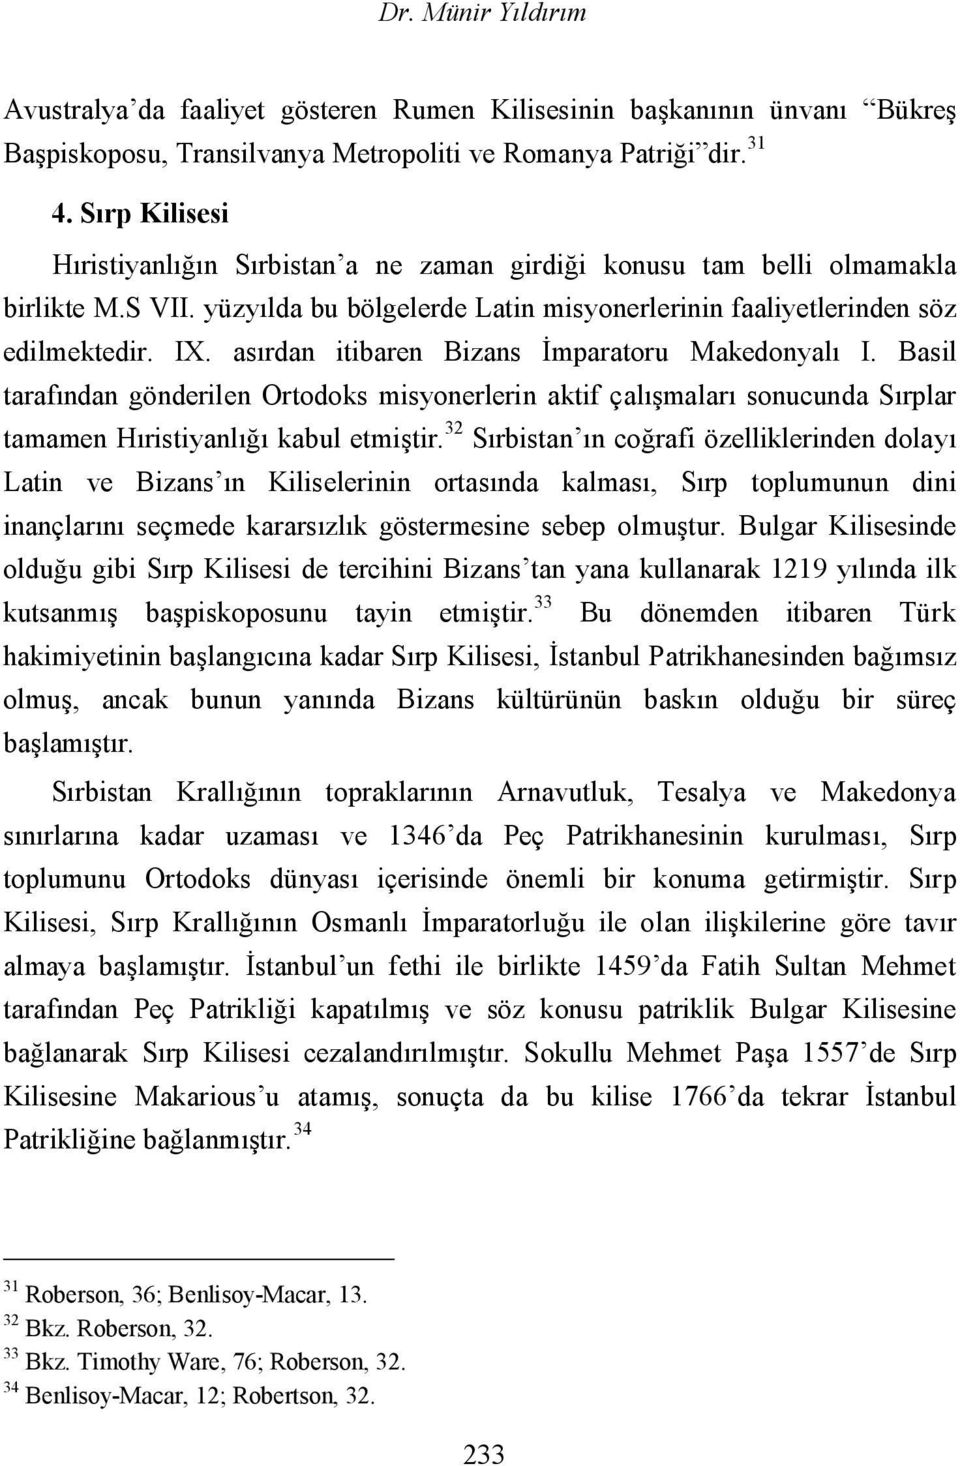 asırdan itibaren Bizans İmparatoru Makedonyalı I. Basil tarafından gönderilen Ortodoks misyonerlerin aktif çalışmaları sonucunda Sırplar tamamen Hıristiyanlığı kabul etmiştir.